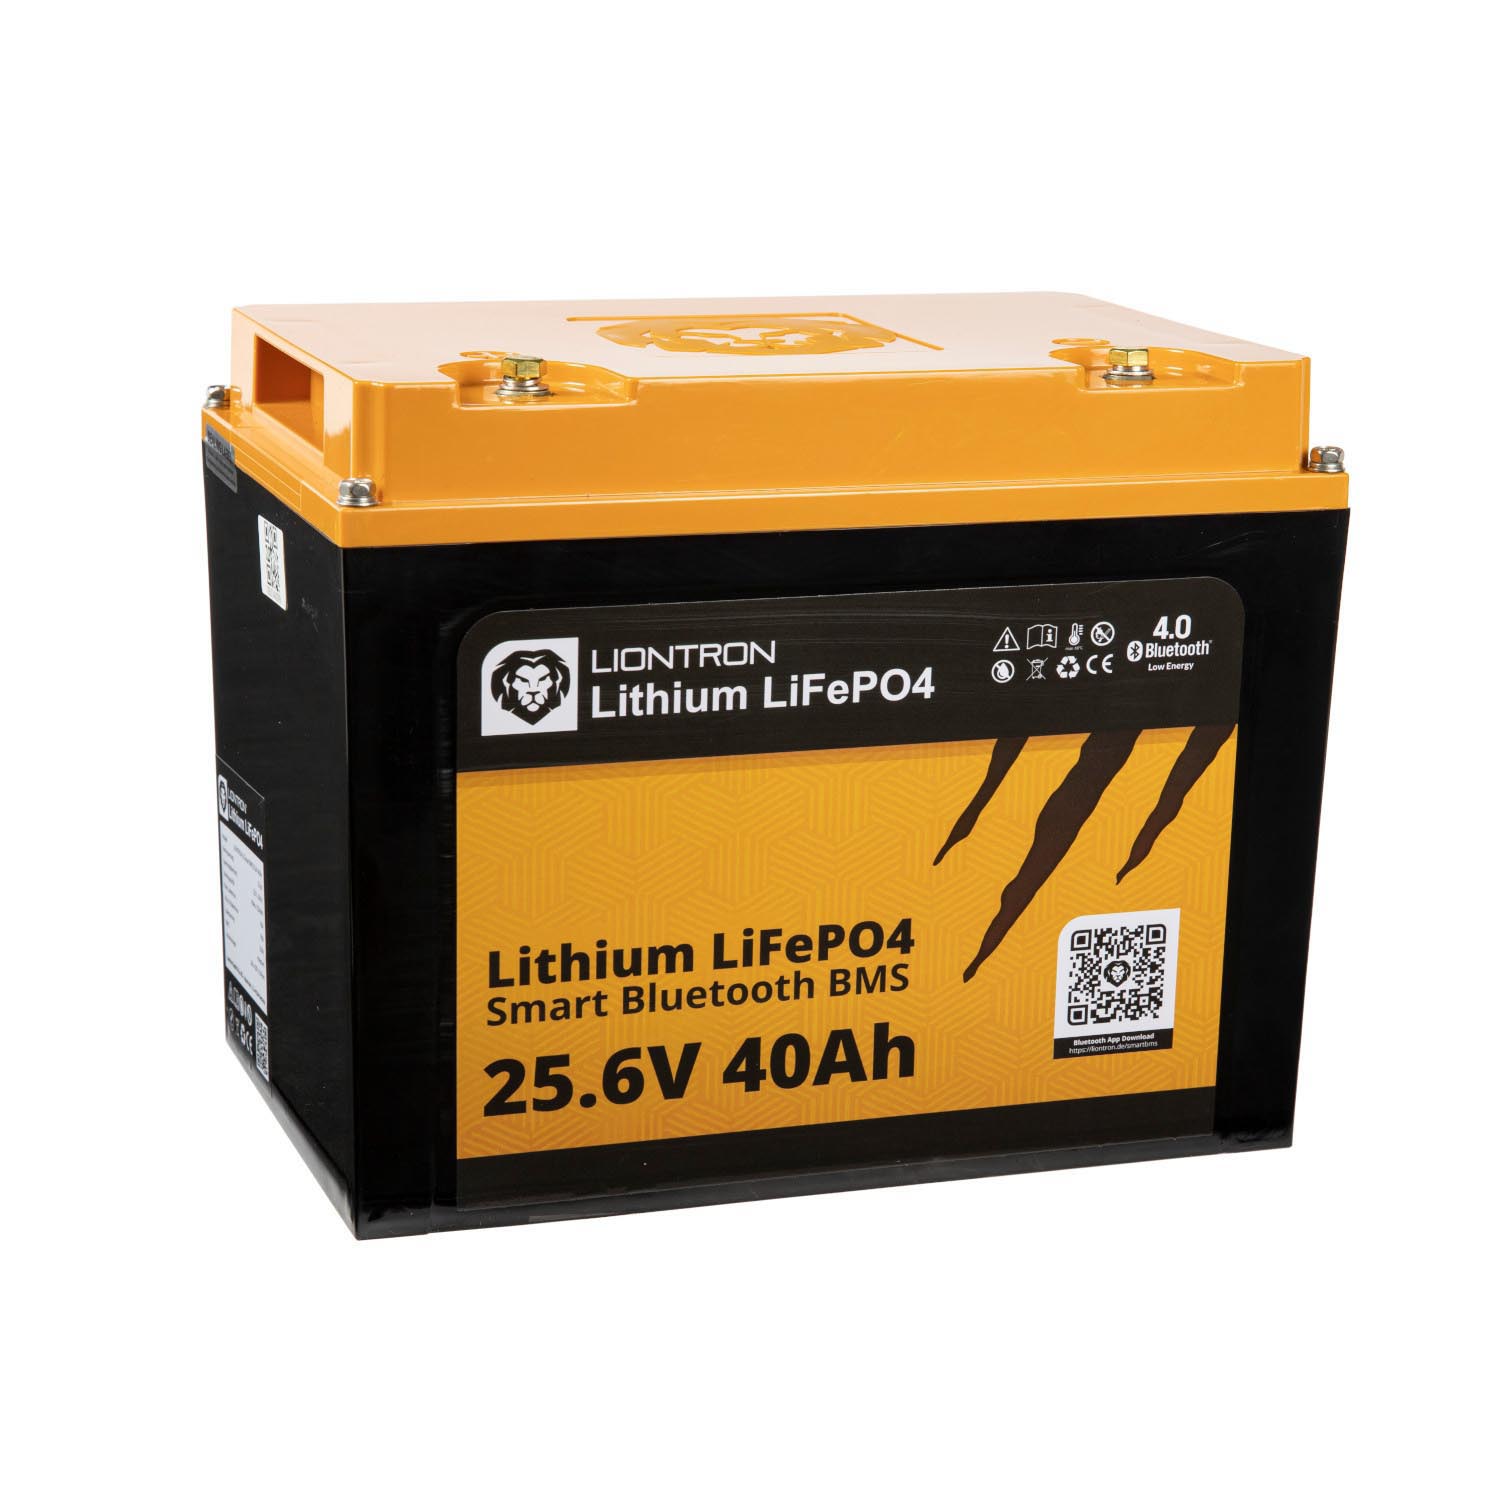 Liontron 40Ah 25,6V LiFePO4 Lithium Batterie BMS Bluetooth mit App